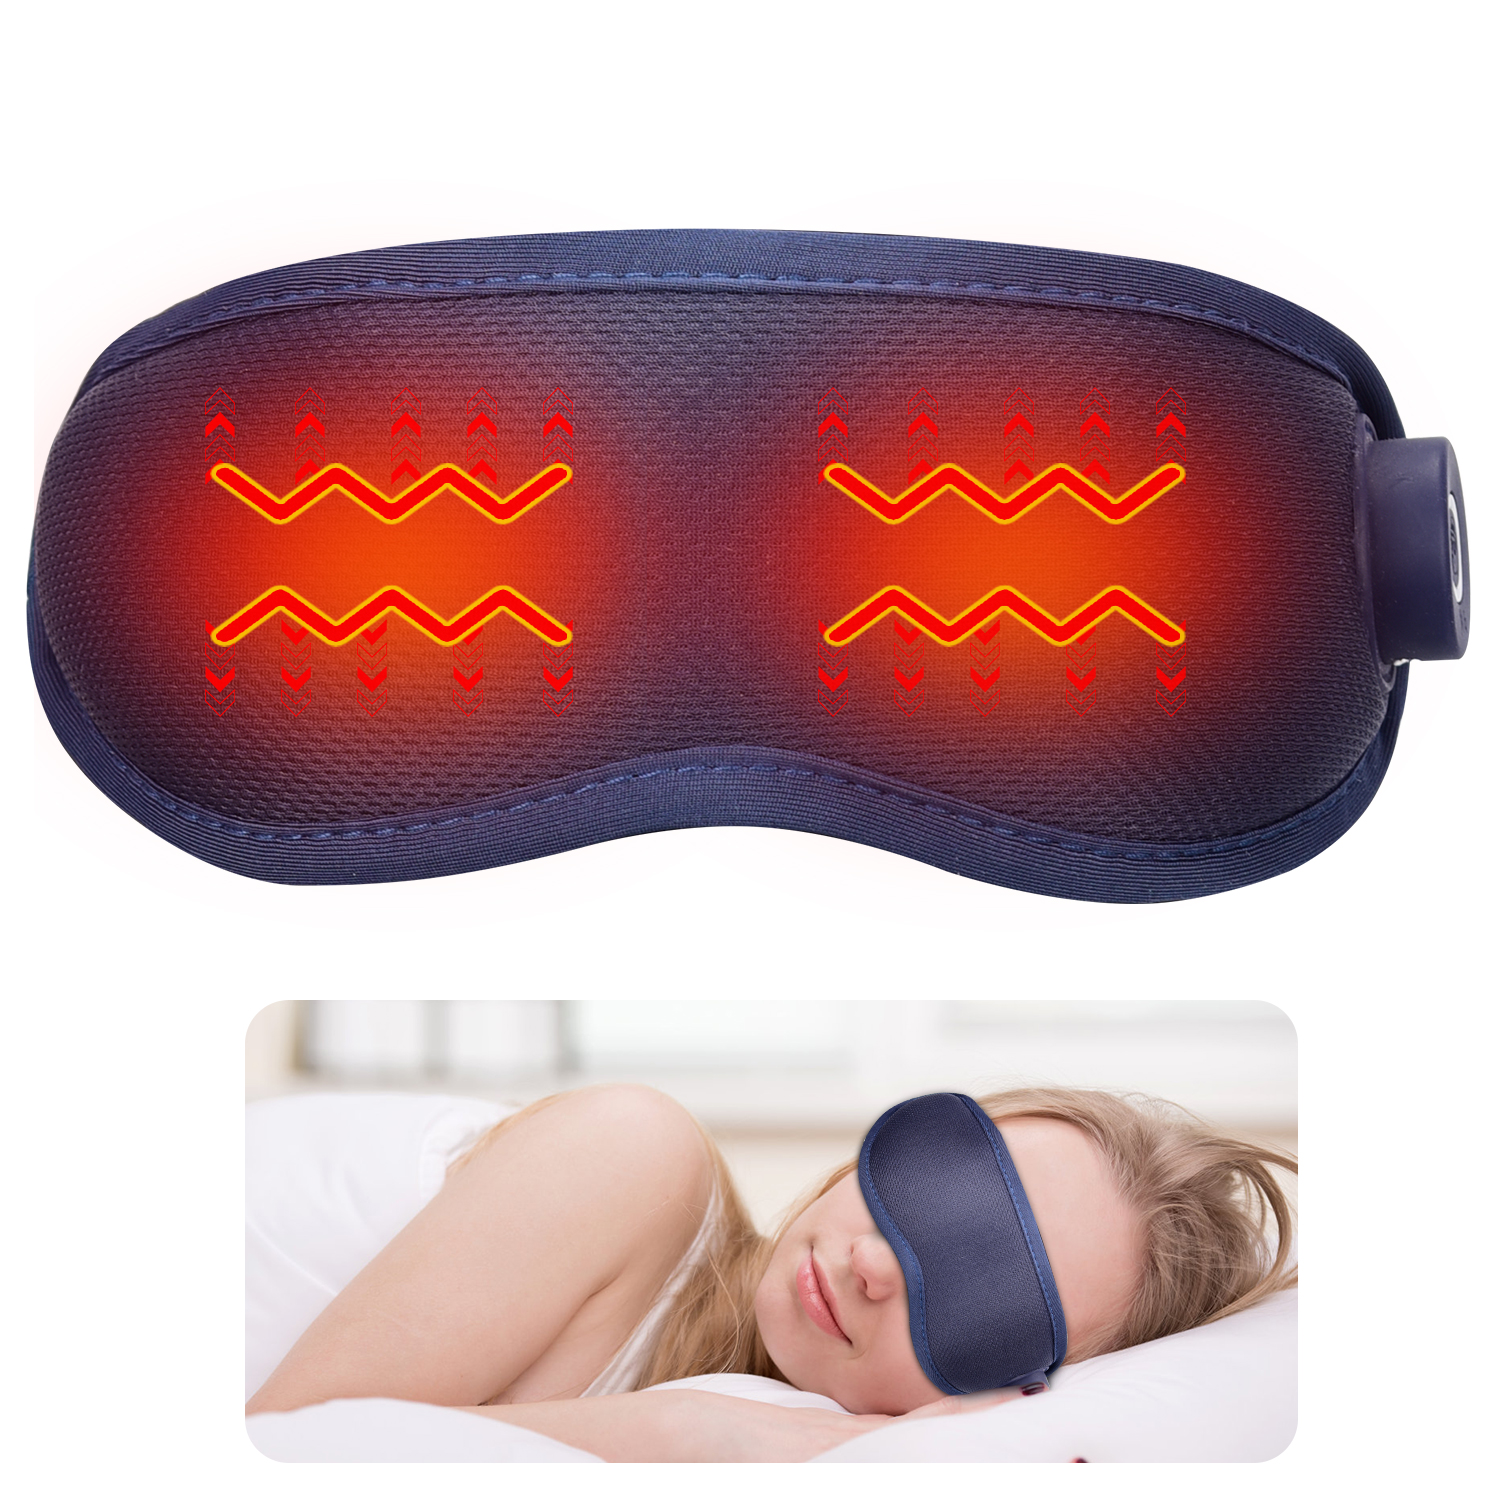 Meeegou Electric Smart Eye care Massager Маска для глаз с темными кругами, подогревом, вибрацией